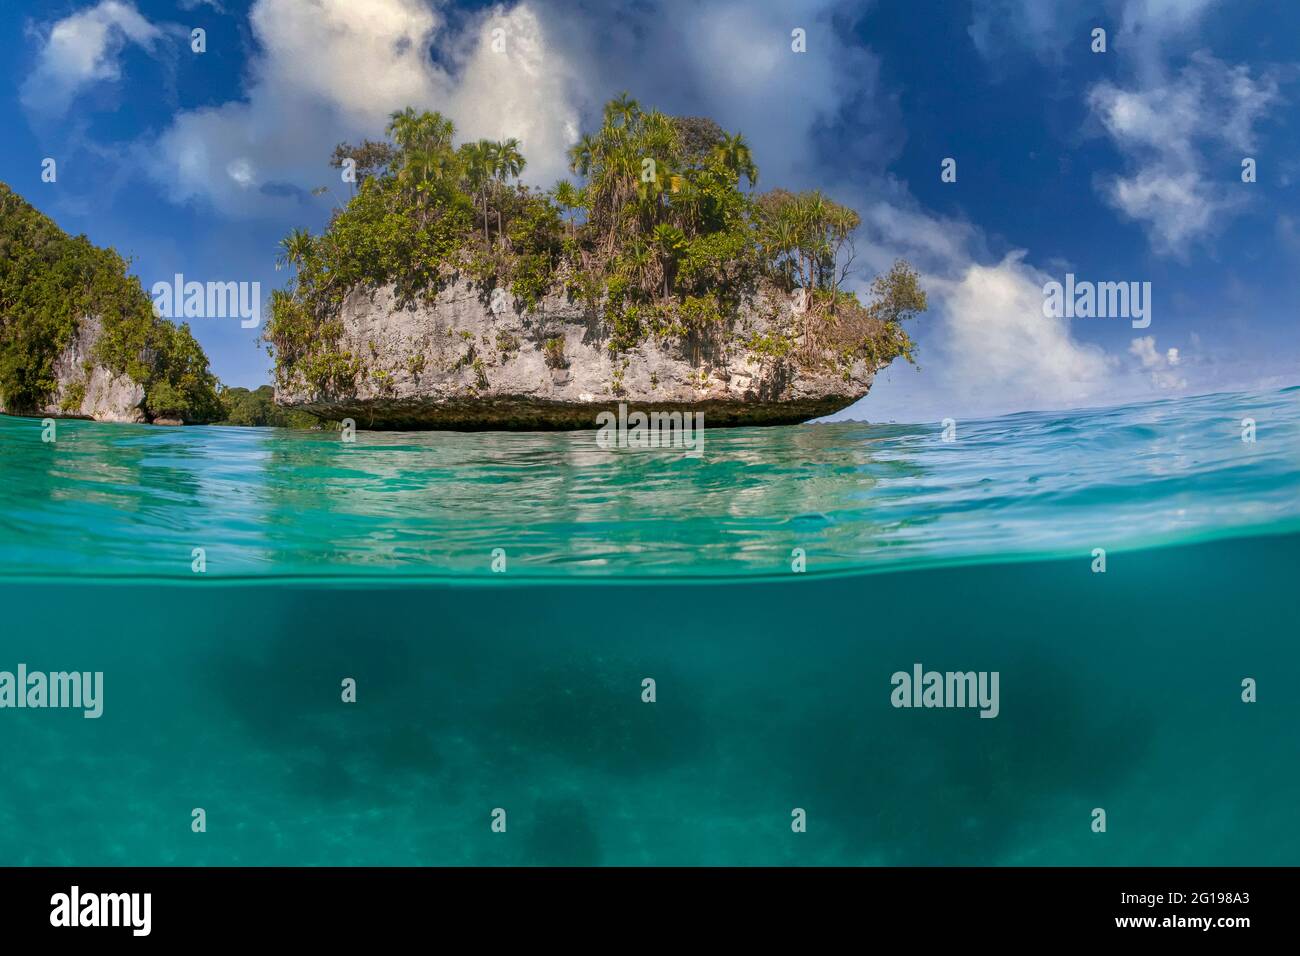 Islands of Palau, Micronesia, Palau Stock Photo